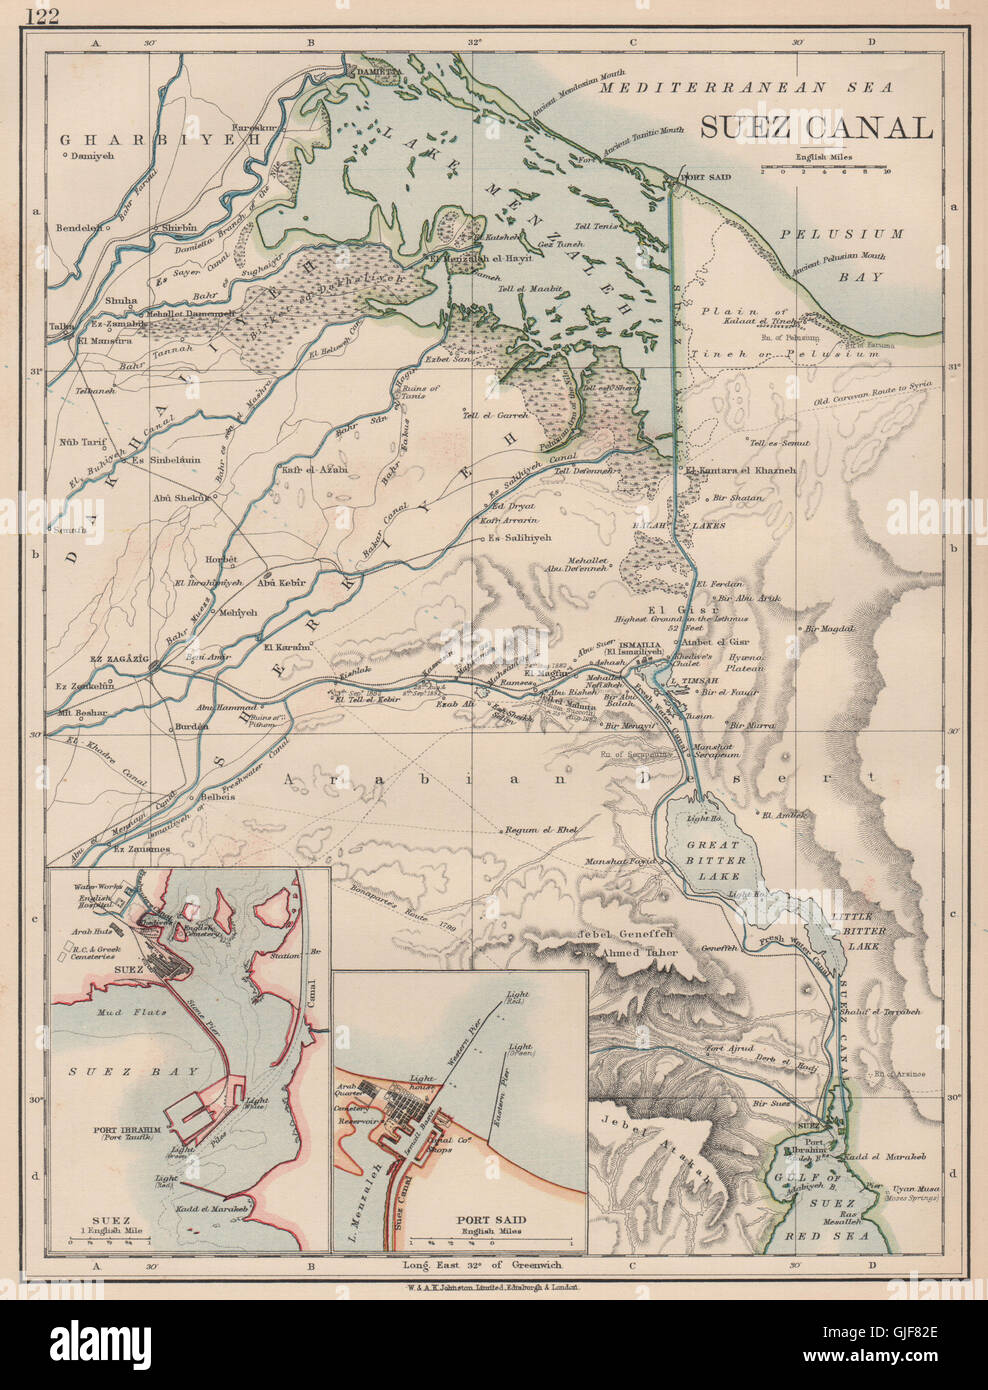 SUEZ CANAL. Plan. Inset Suez town & Port Said. JOHNSTON, 1906 antique map Stock Photo